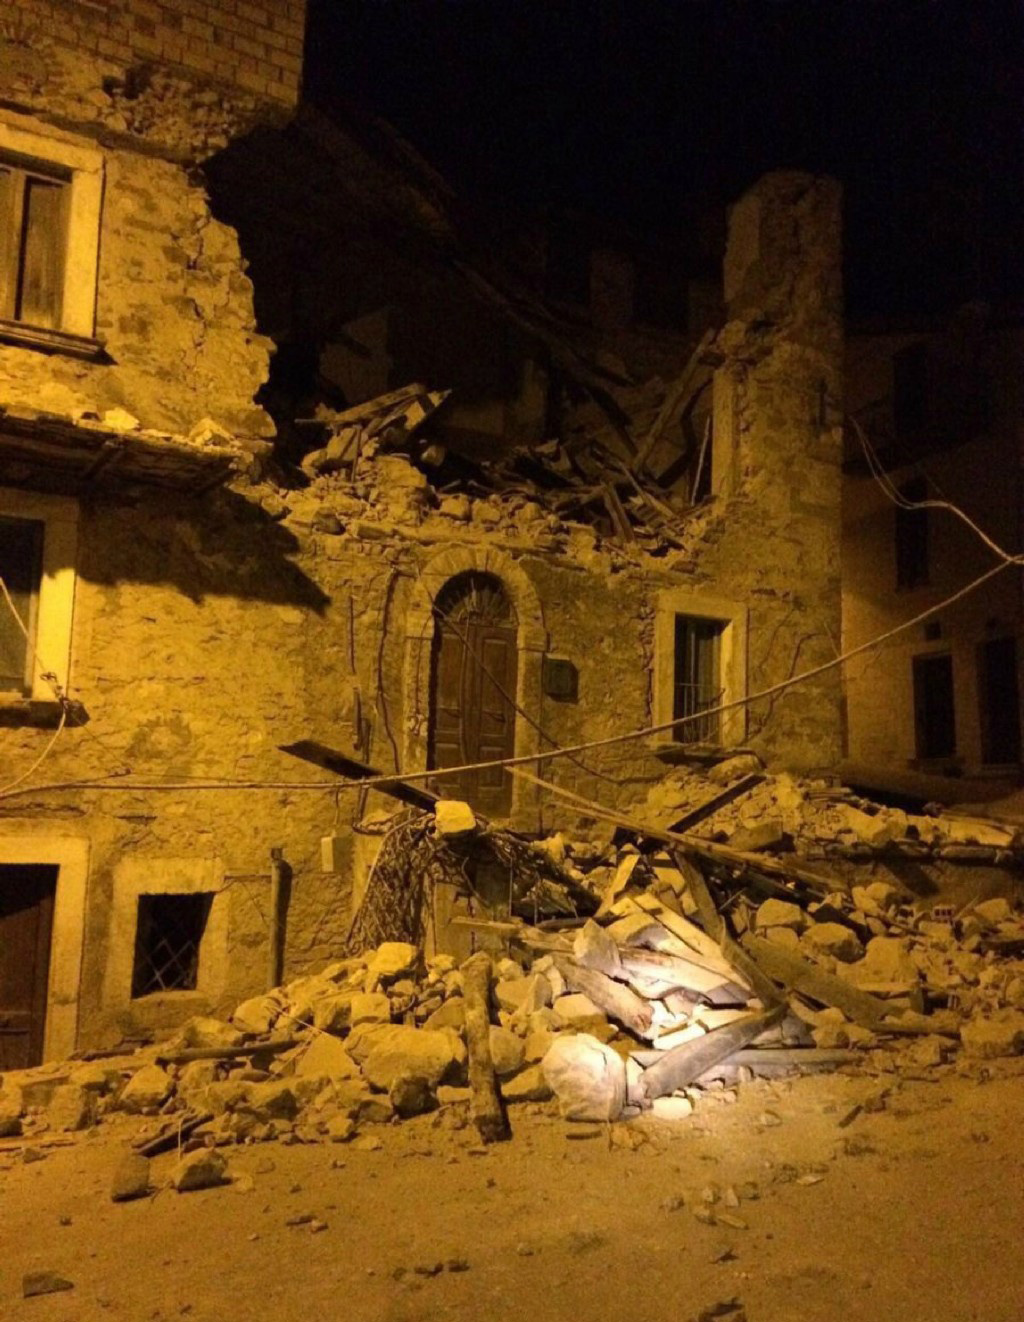 意大利地震救援行动困难